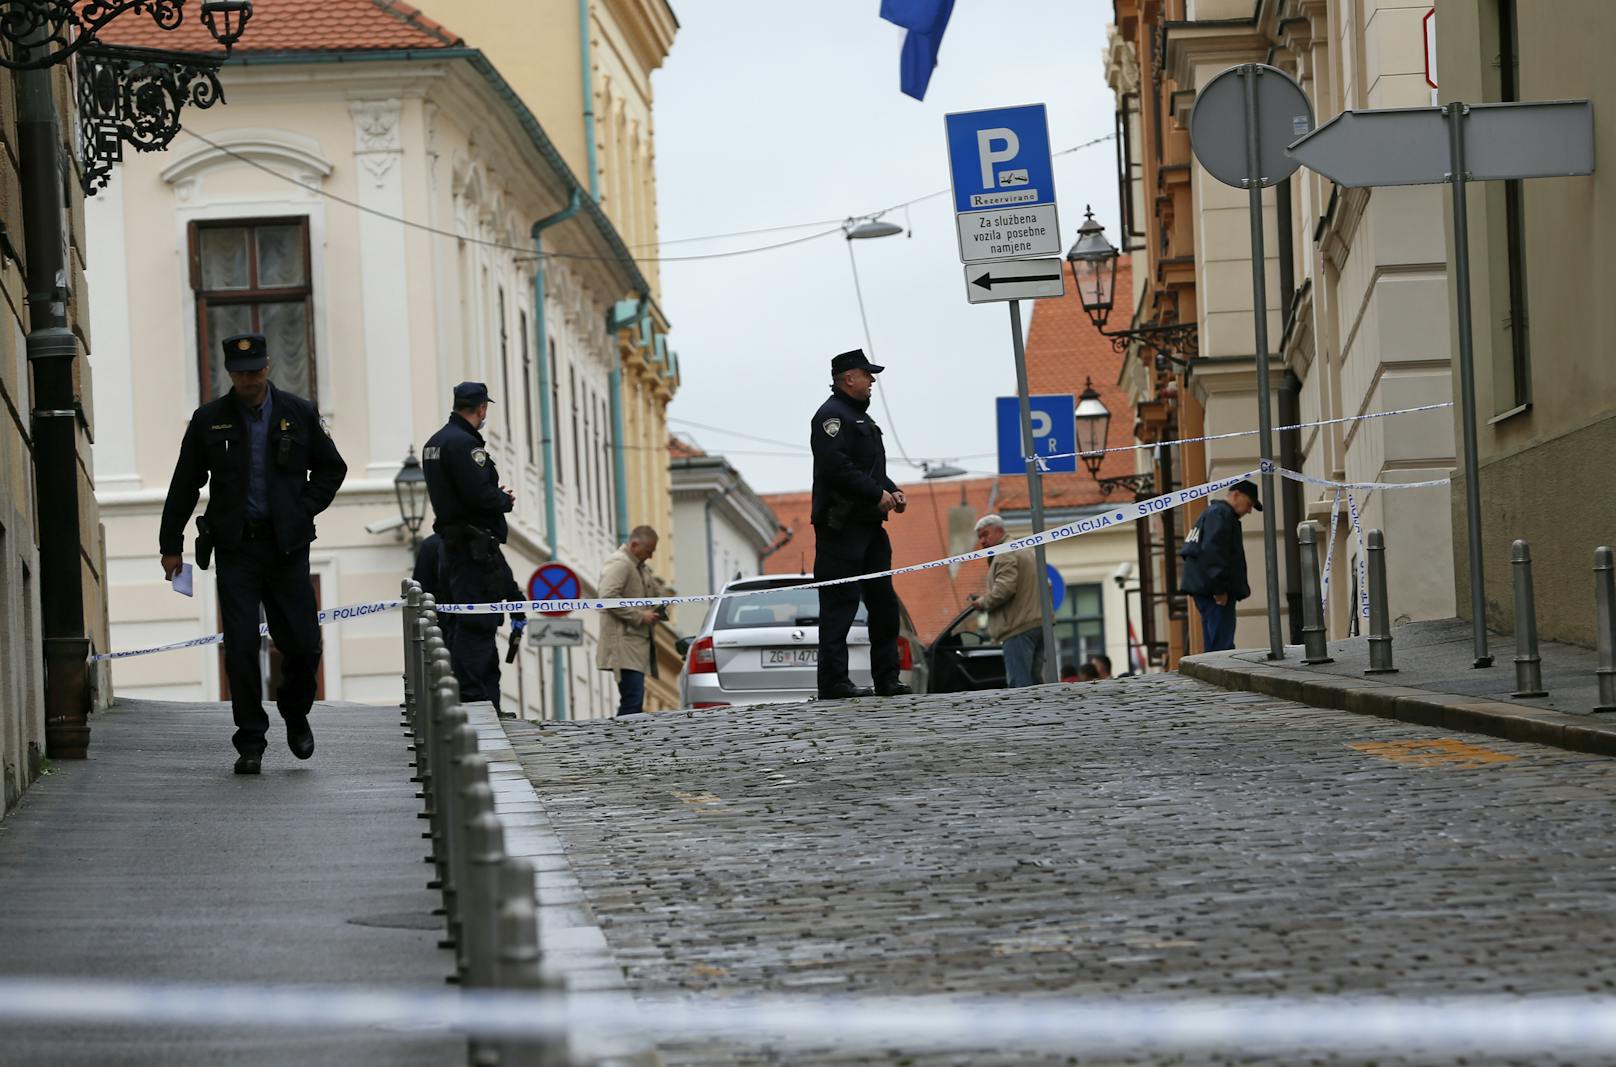 Am Montag kam es in Zagreb zu einem Schusswaffengebrauch vor dem Regierungsgebäude.